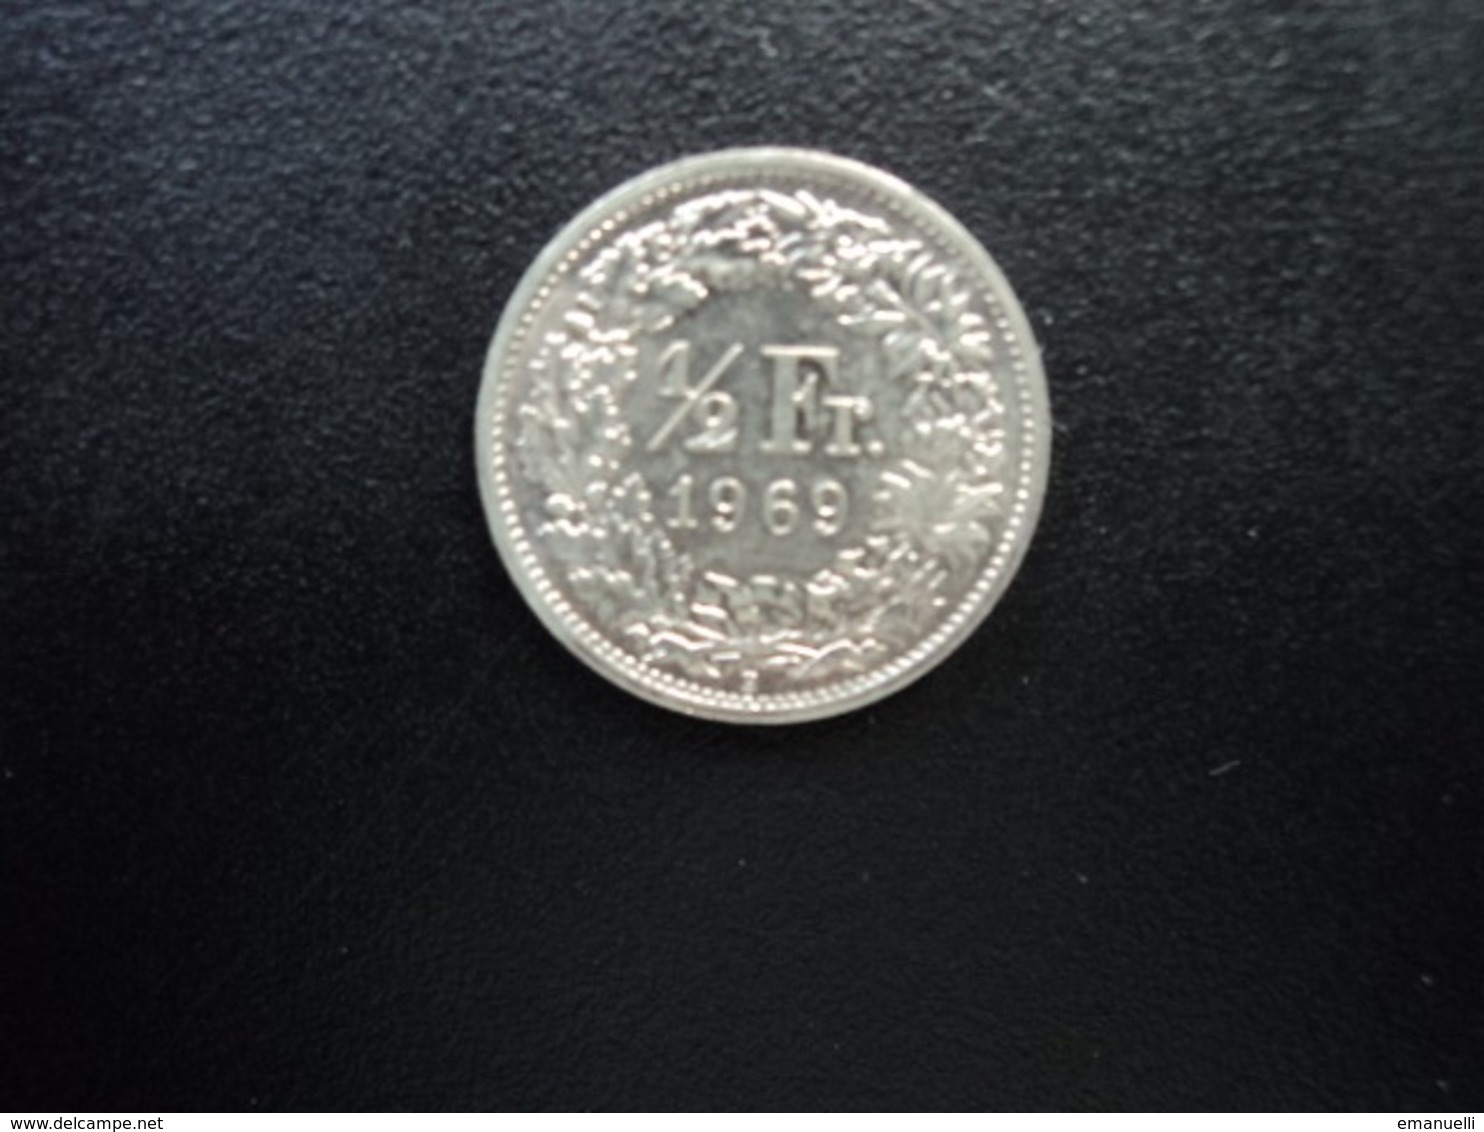 SUISSE : 1/2 FRANC   1969 B    KM 23a.1      SUP+ - 1/2 Franc